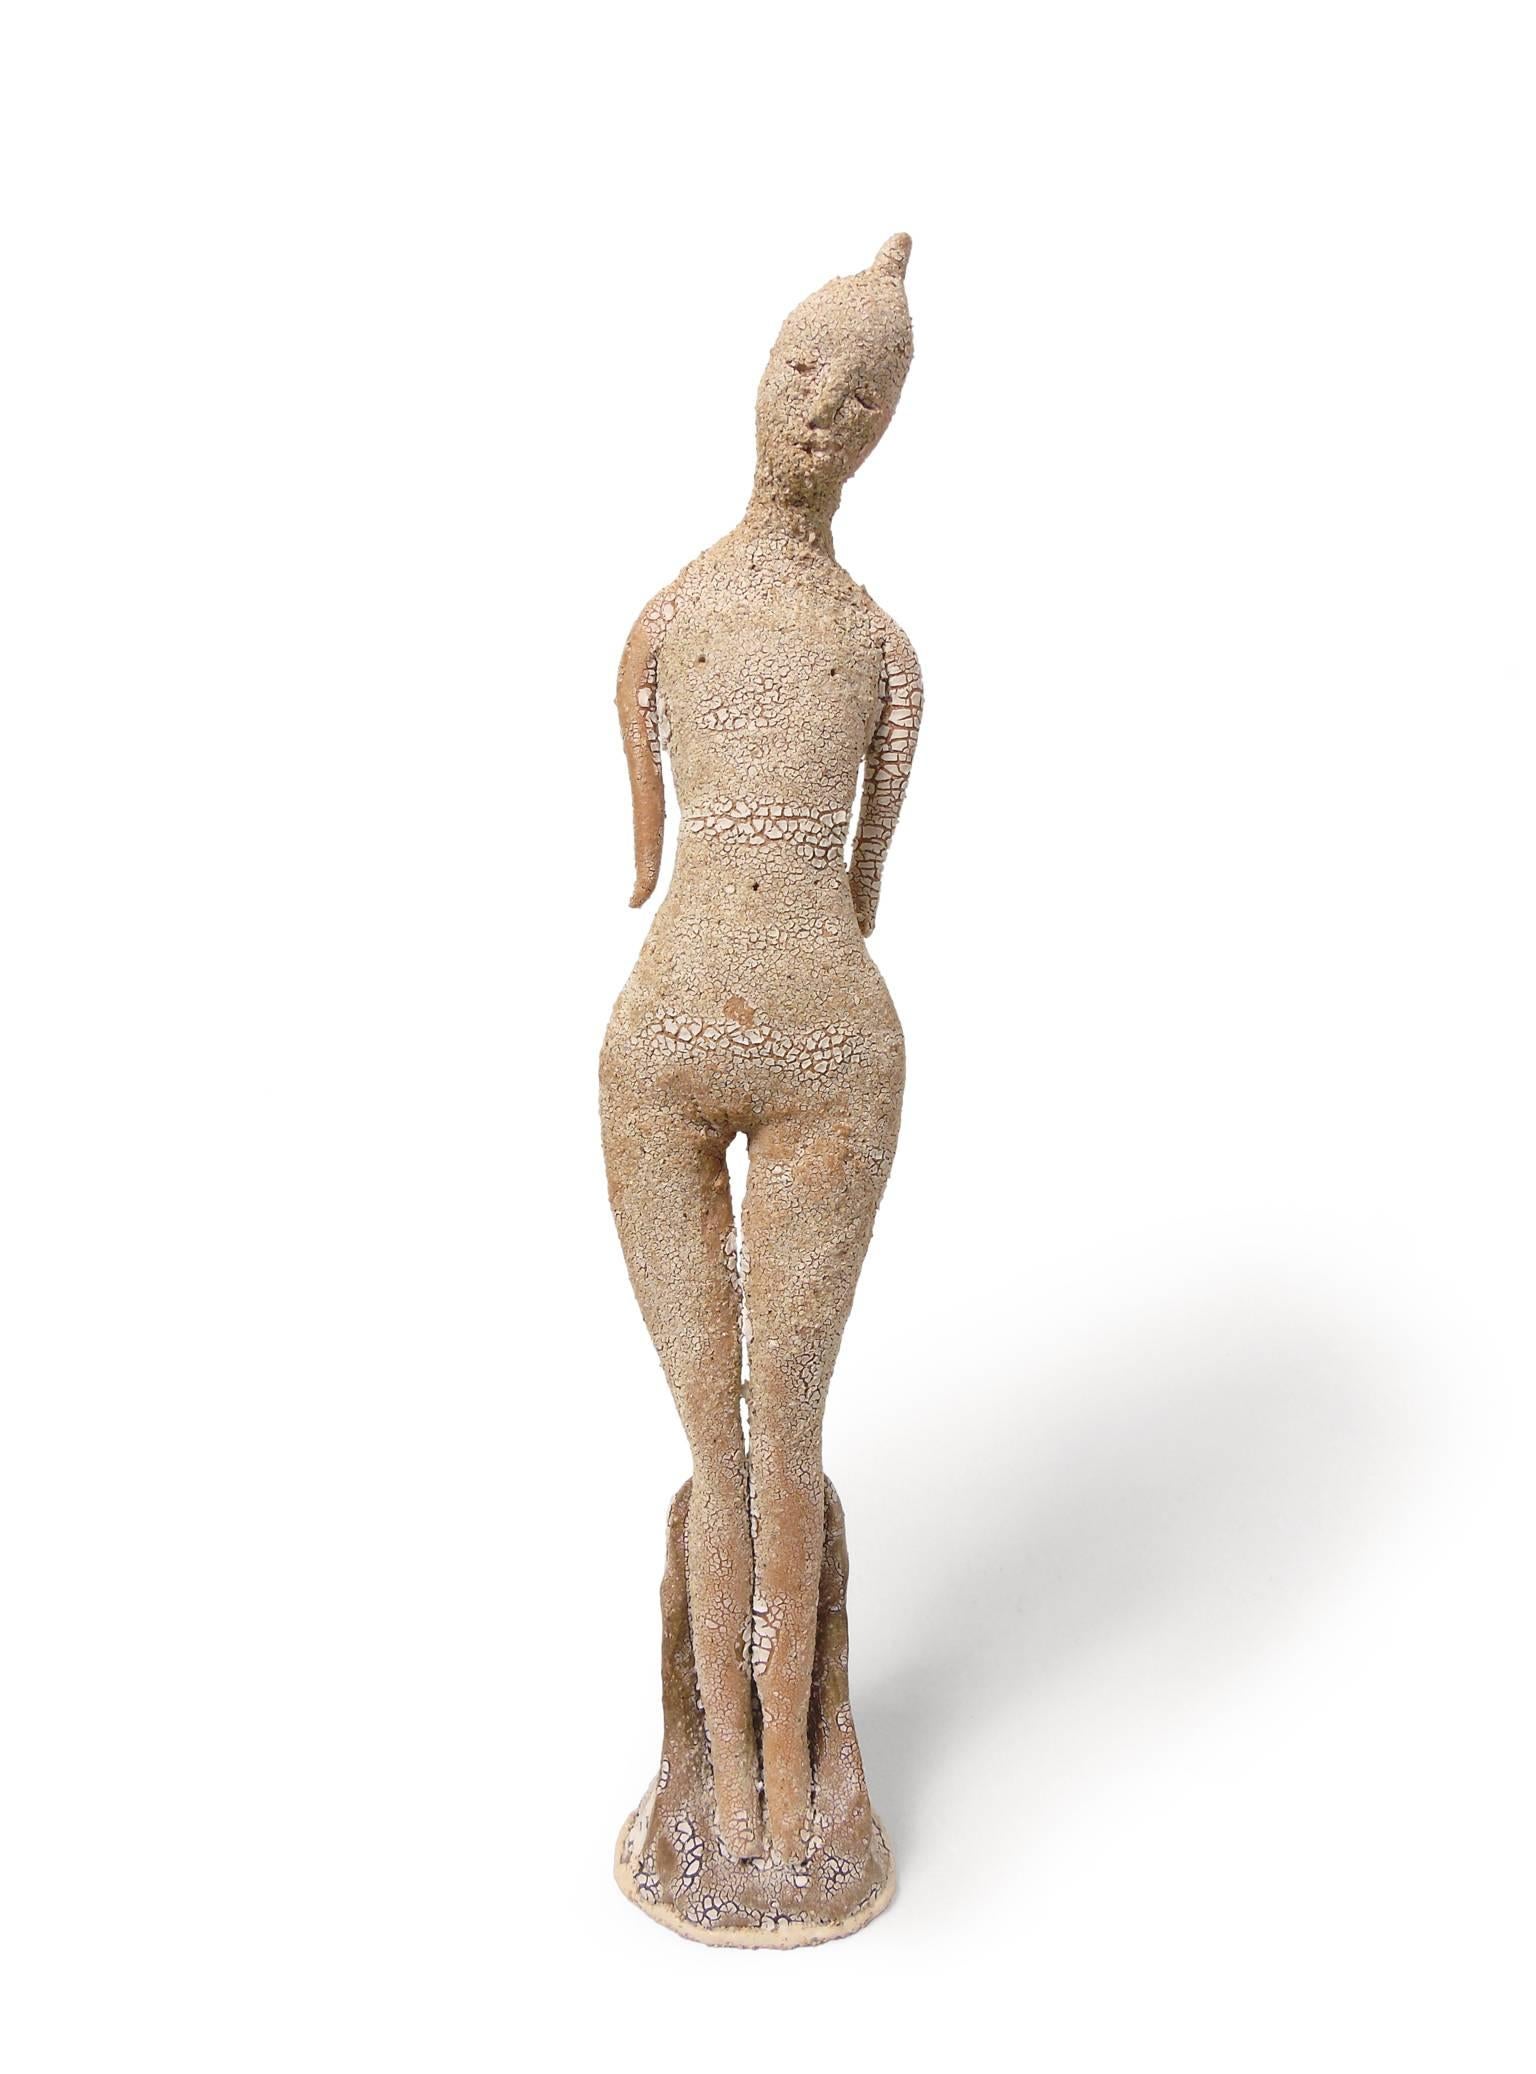 Robin Whiteman Figurative Sculpture - Standing Goddess